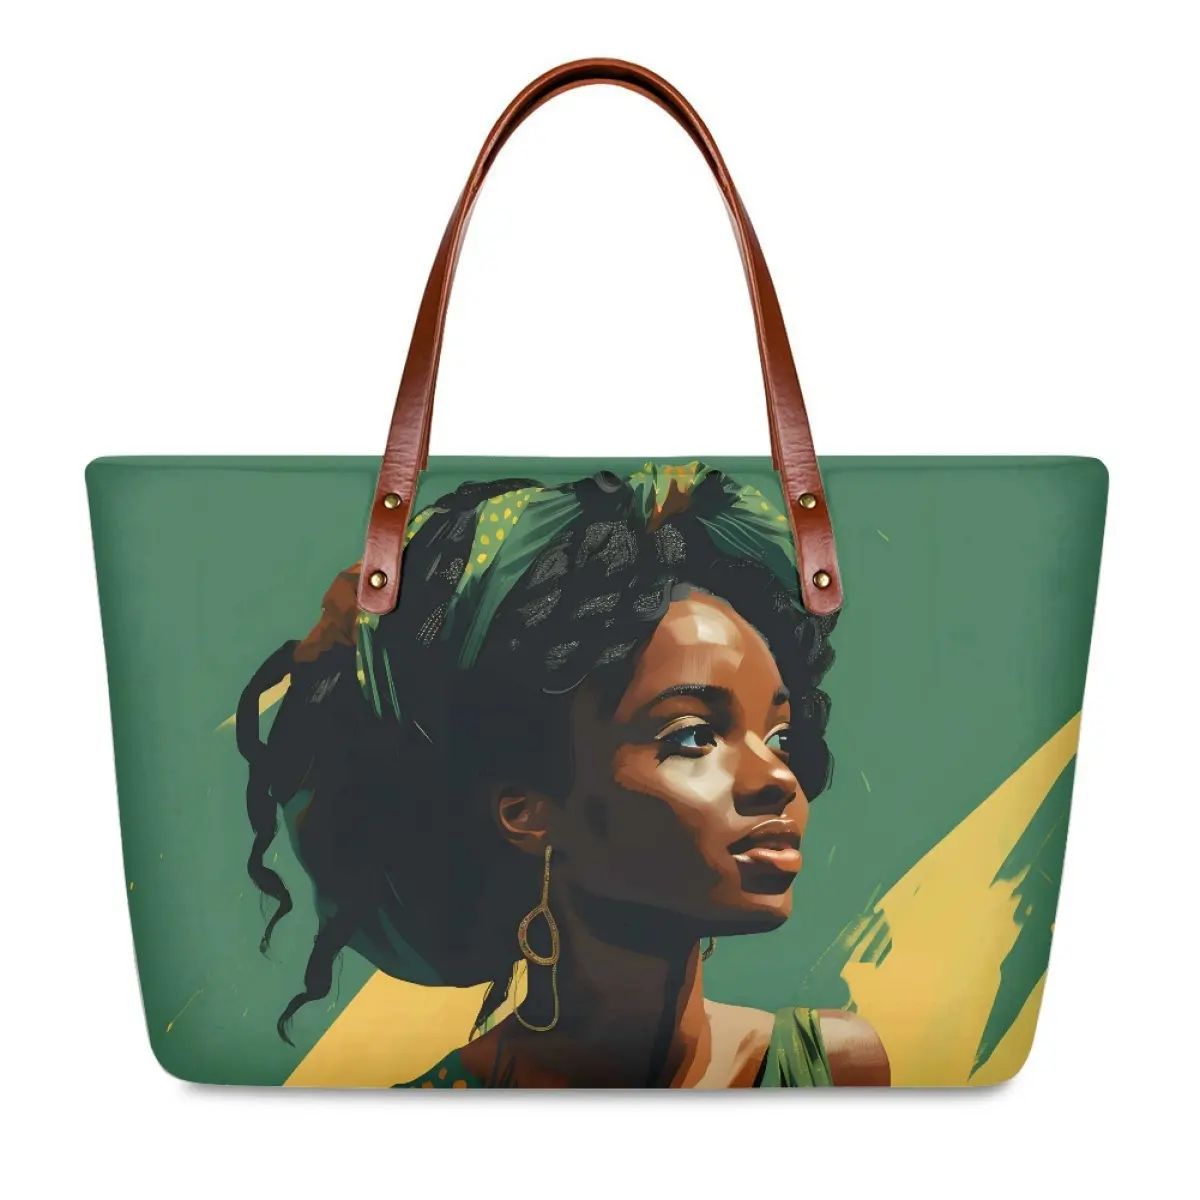 OEM Wholesale Shoulder Bag Beautiful South Africa Black Girl Print Handbags Large Capacity Tote Bags Custom Women Travel Handbag